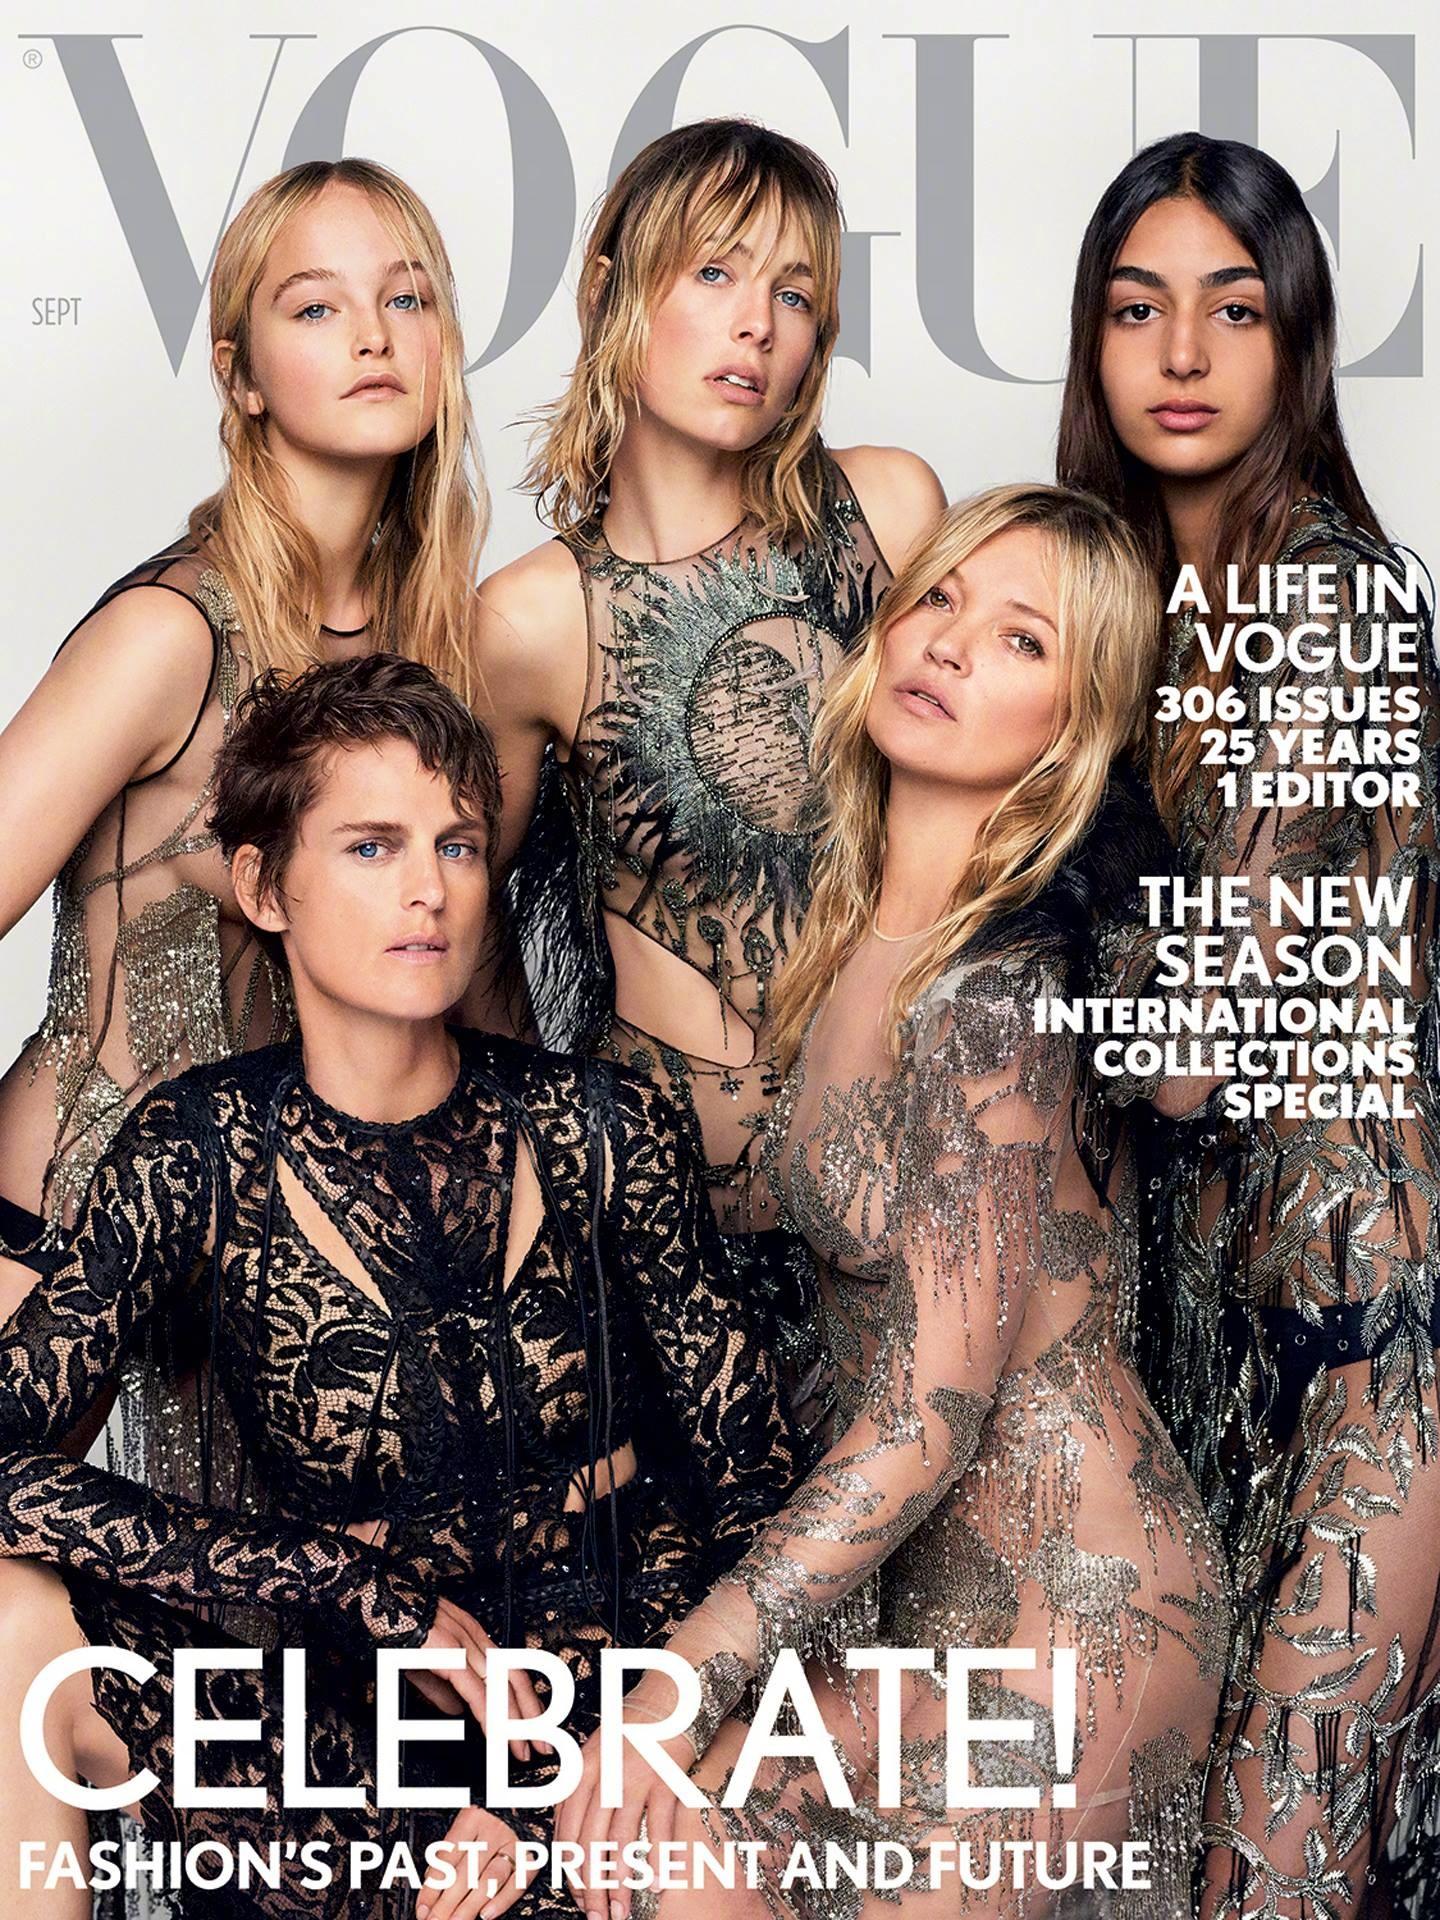 杂志大片 UK Vogue September 2017 英国版《Vogue》九月刊 “Where We Belong”封面主题,